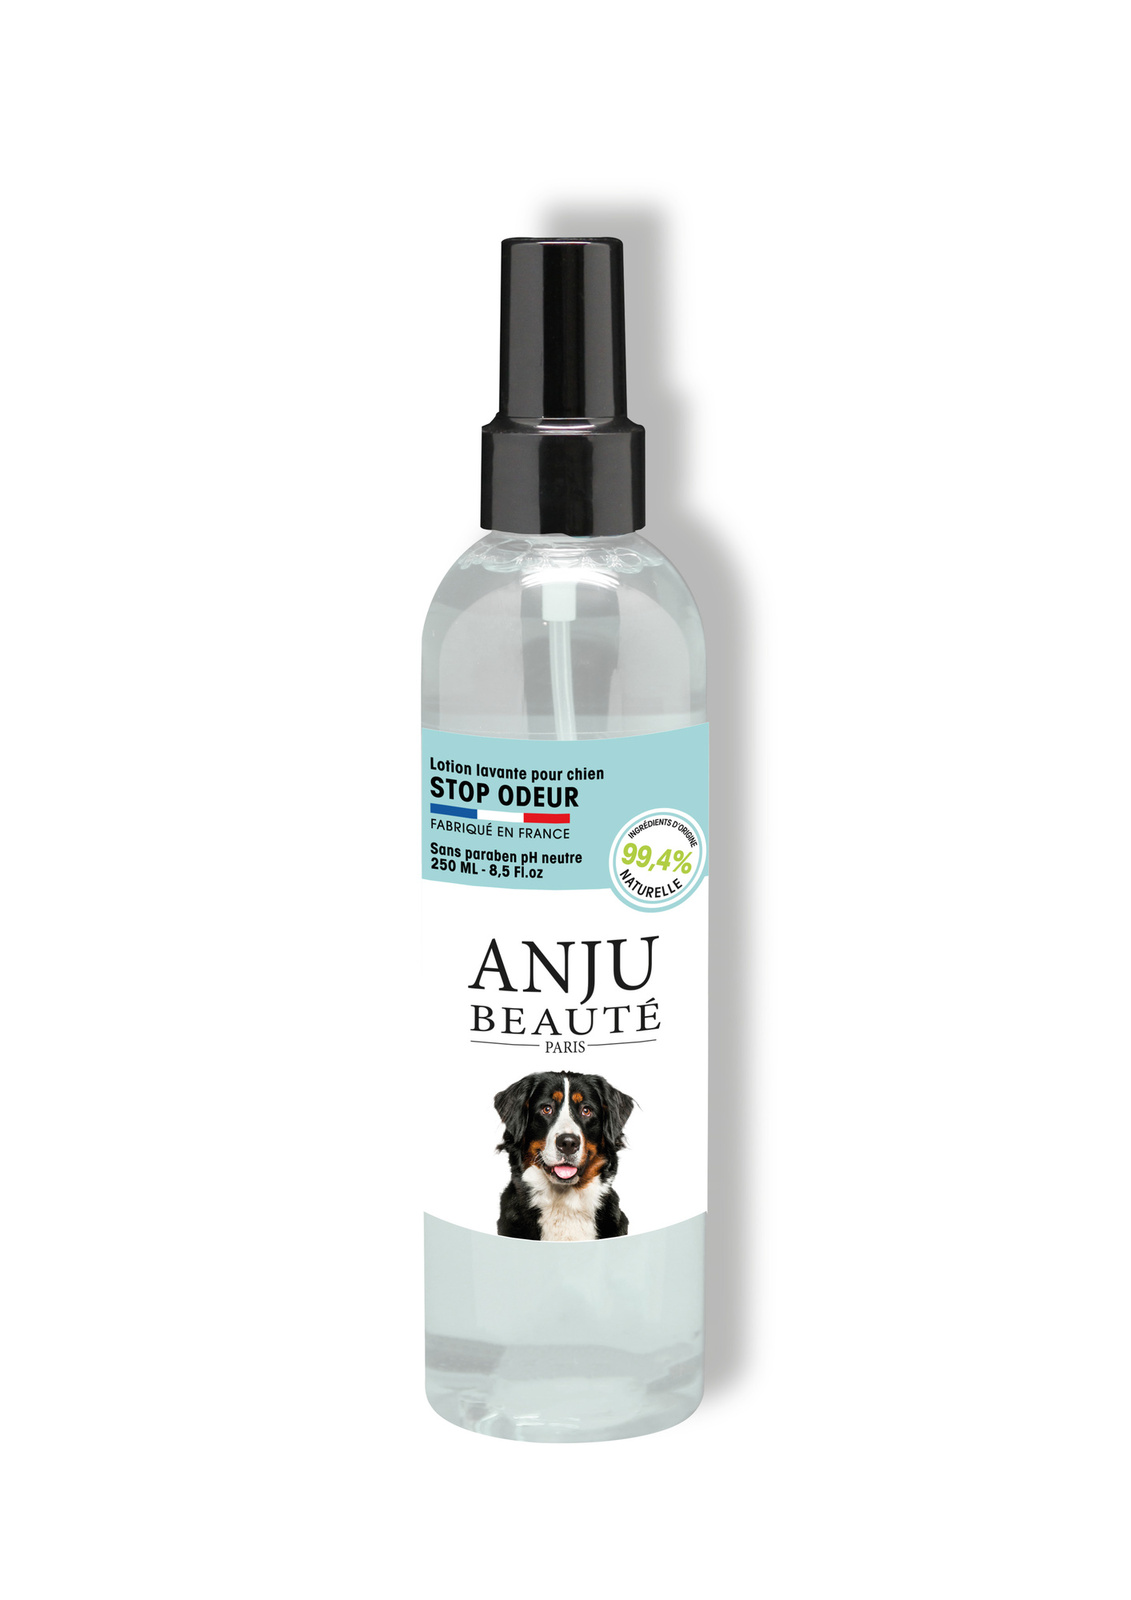 Anju Beaute Anju Beaute лосьон для собак от запахов, 250 мл (250 г) anju beaute anju beaute шампунь для собак против перхоти 200 мл 200 г